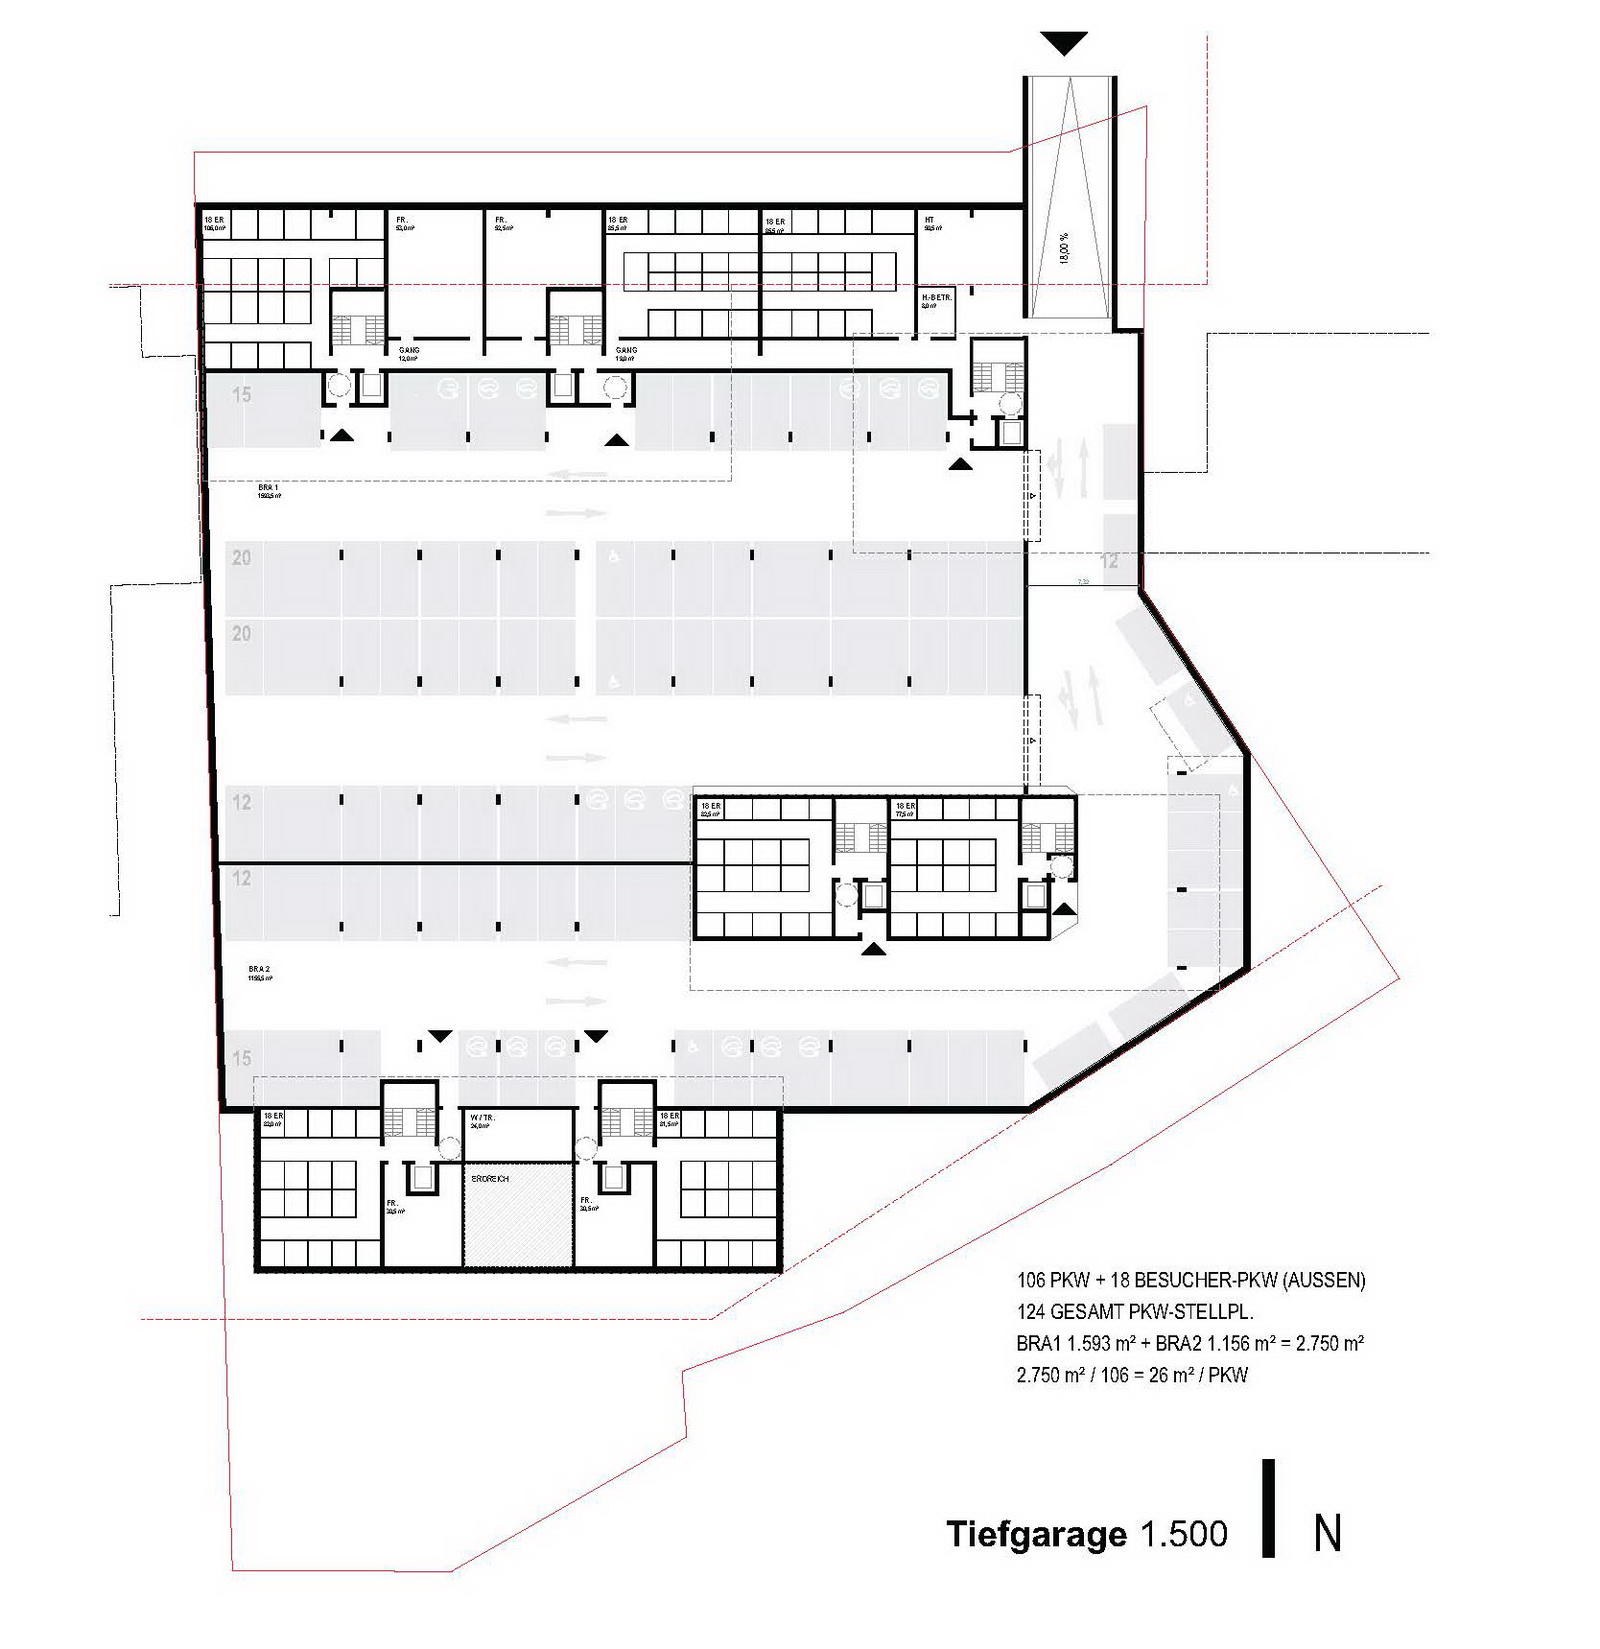 bhe-architektur-wohnbau-derfflingerstrasse-wettbewerb-08